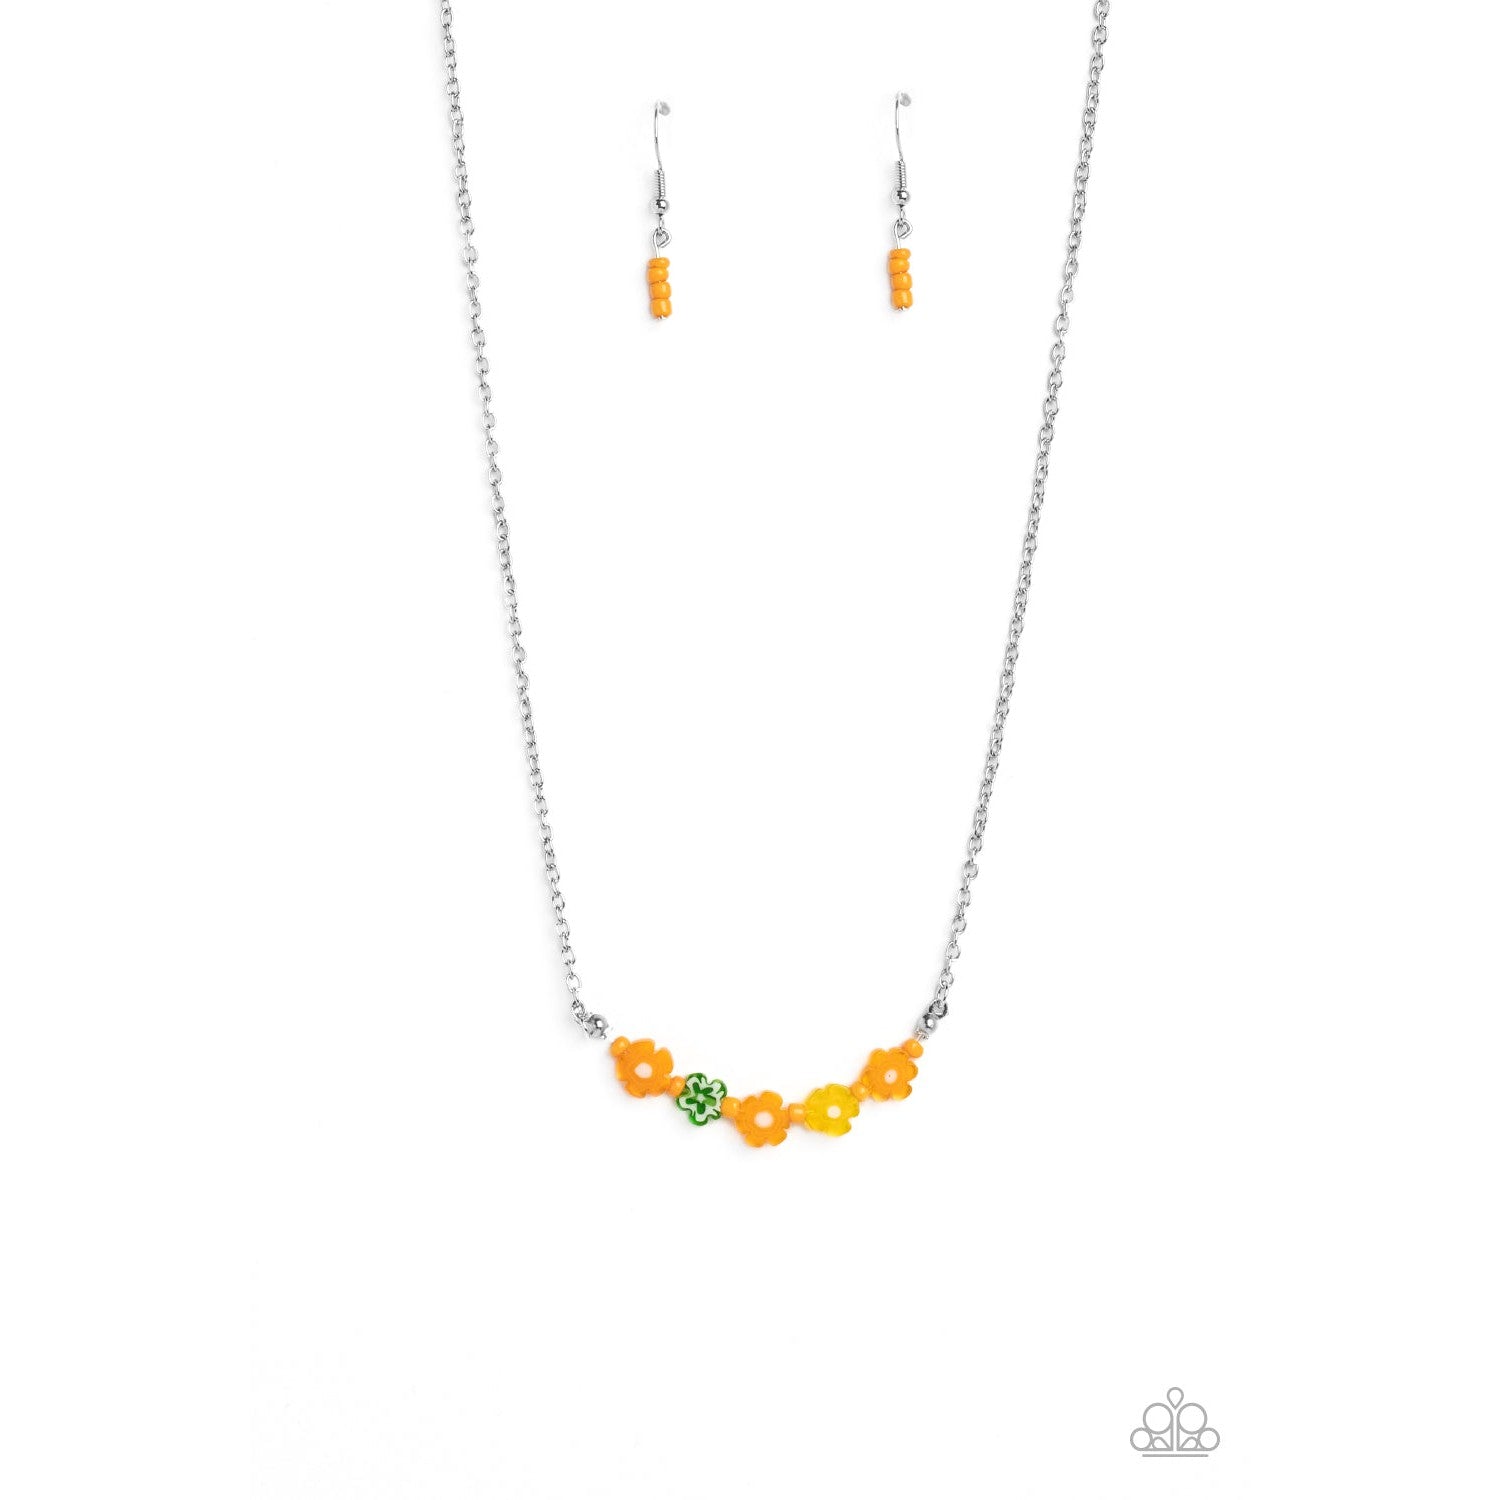 BOUQUET We Go - Orange Necklace - Bling by Danielle Baker